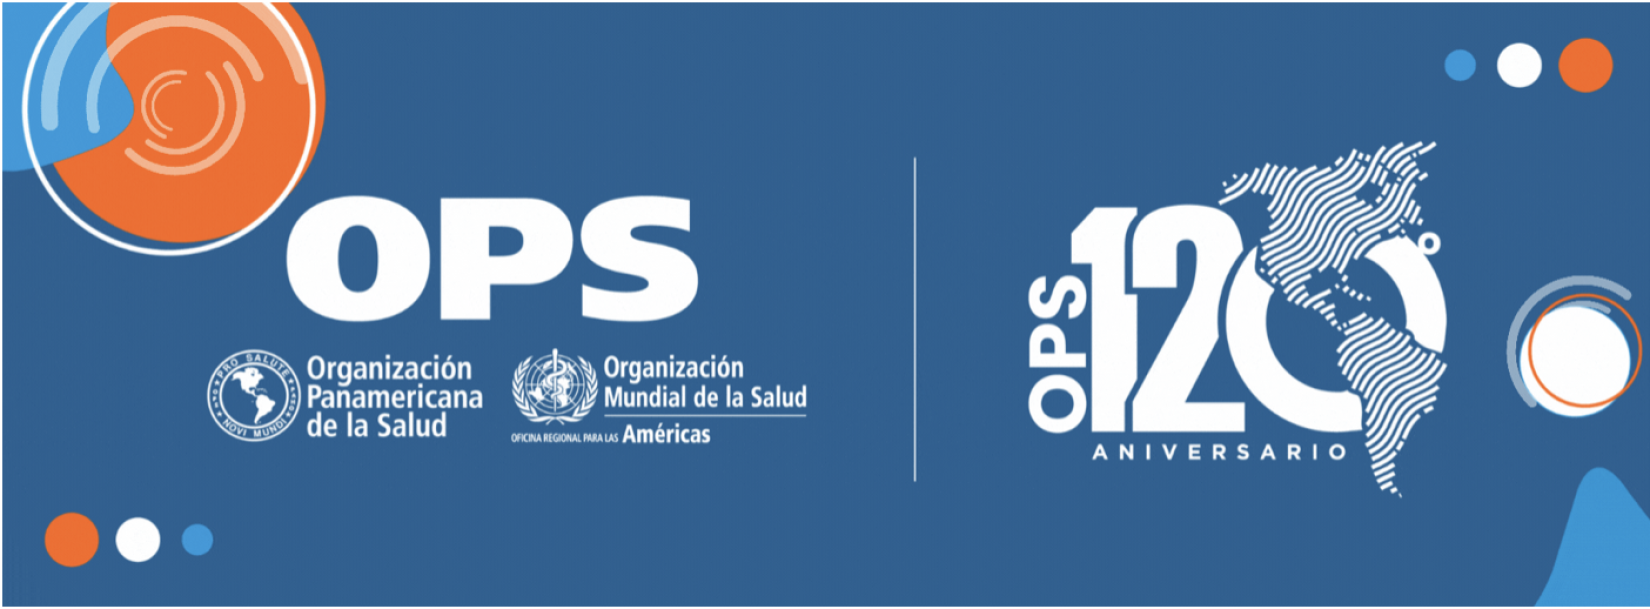 La OPS lanza campaña para celebrar su 120º aniversario Naciones